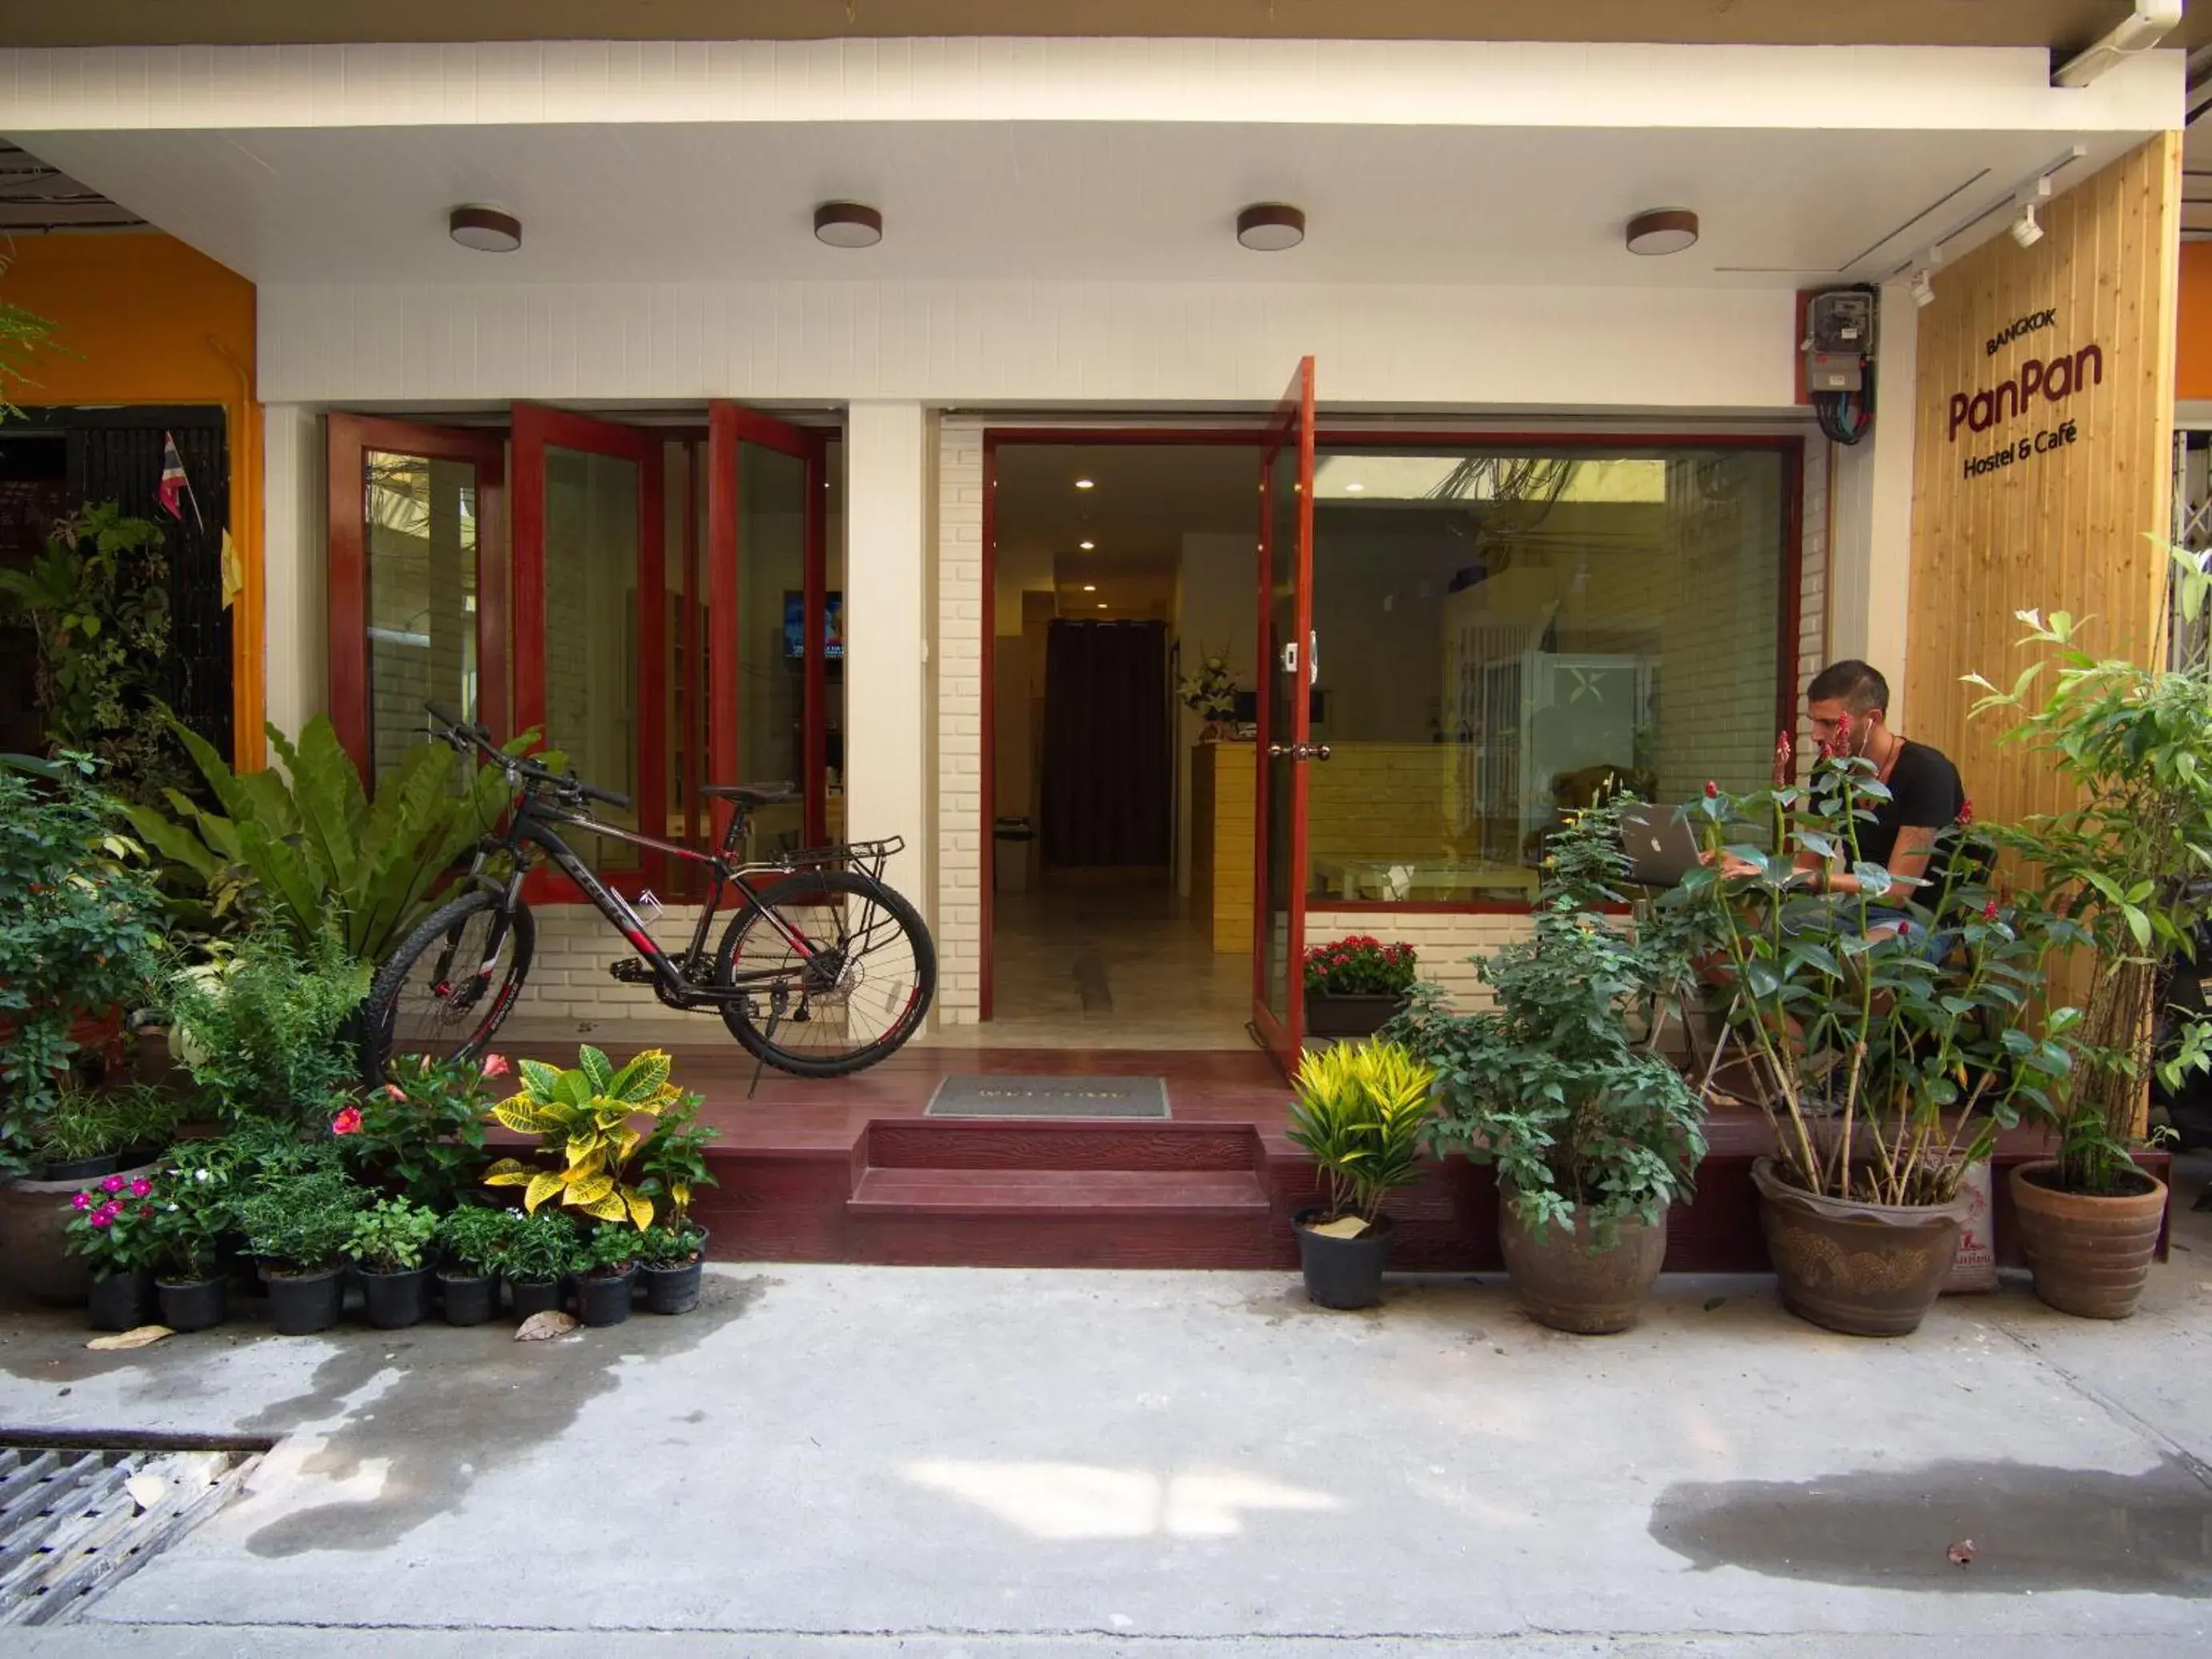 Facade/entrance in Panpan Hostel Bangkok